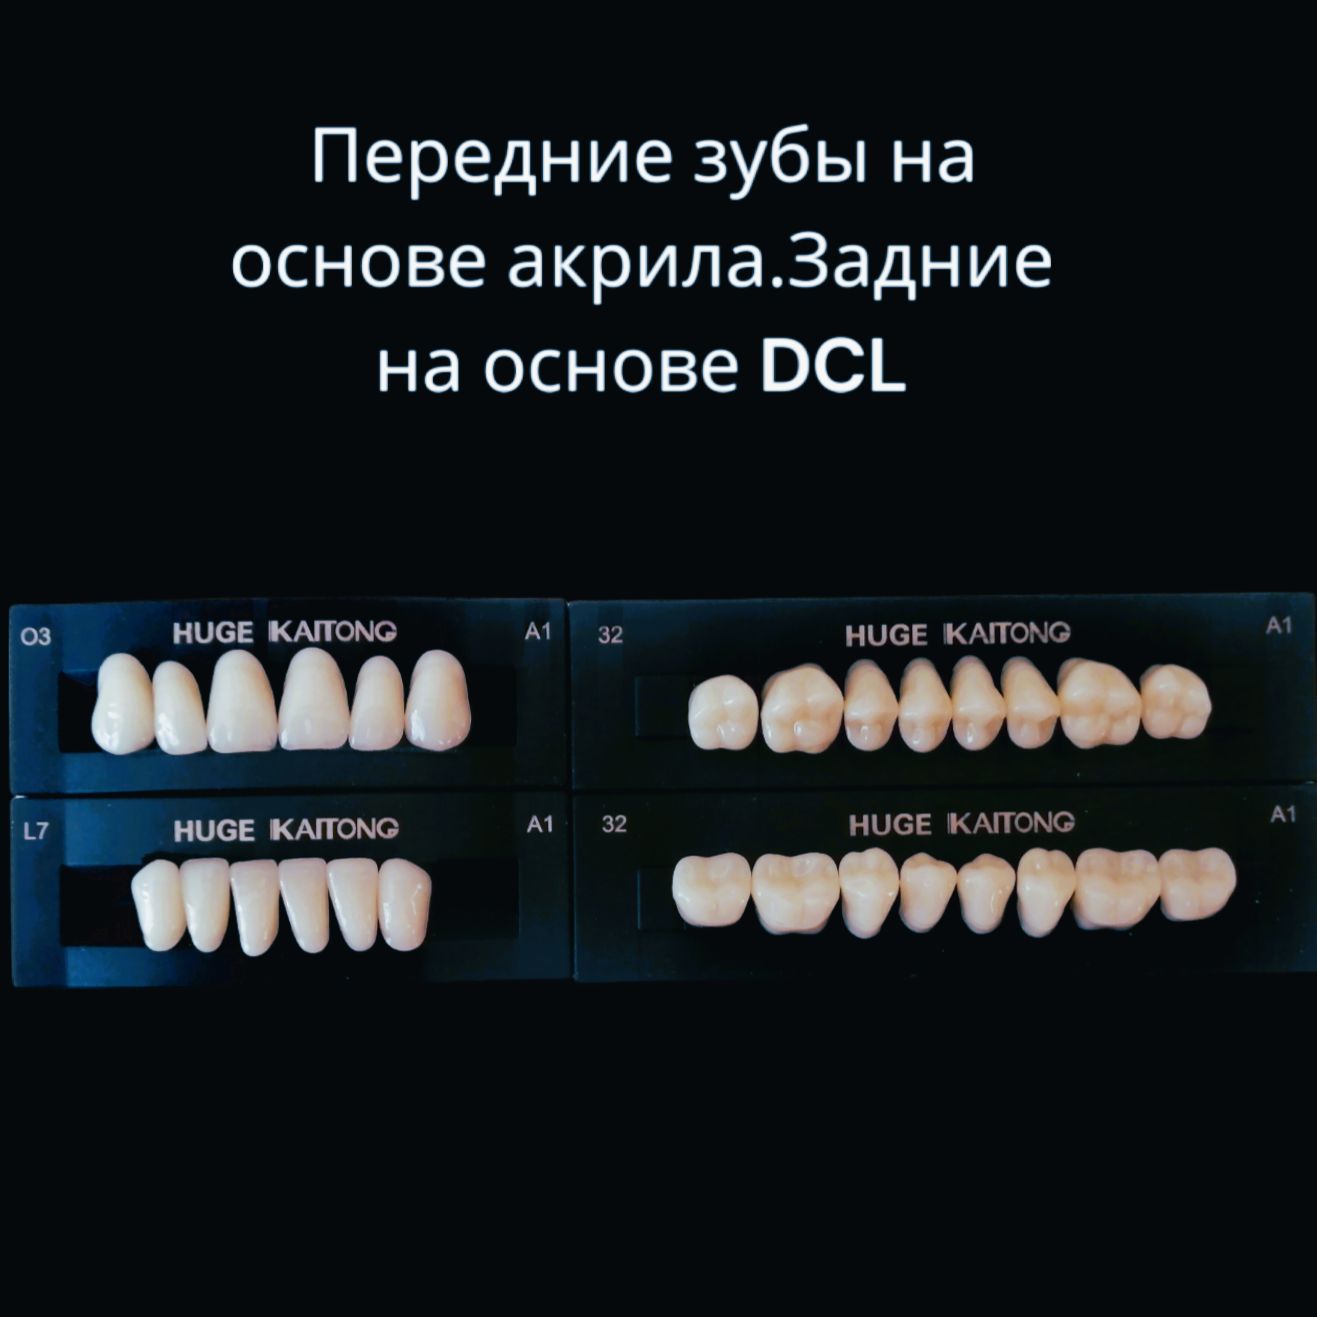 Зубыакриловые2-хслойныеА1О3Kaitong(1гарнитур,28зубов)HUGEDENTAL